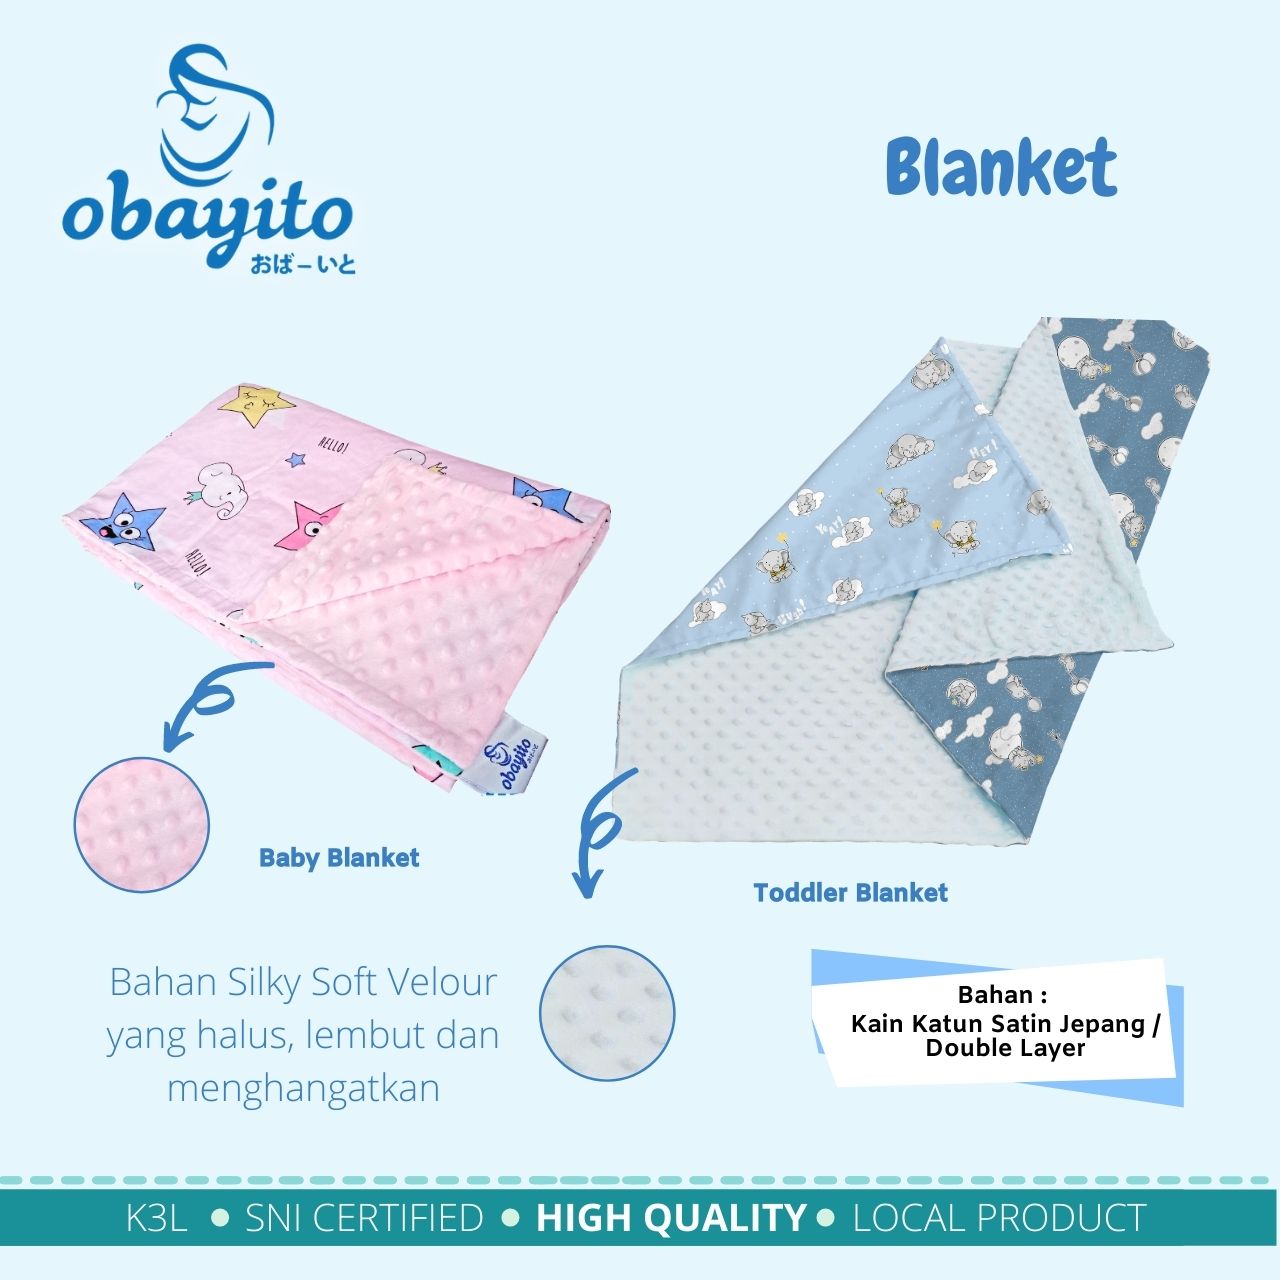 detail ukuran blanket obayito